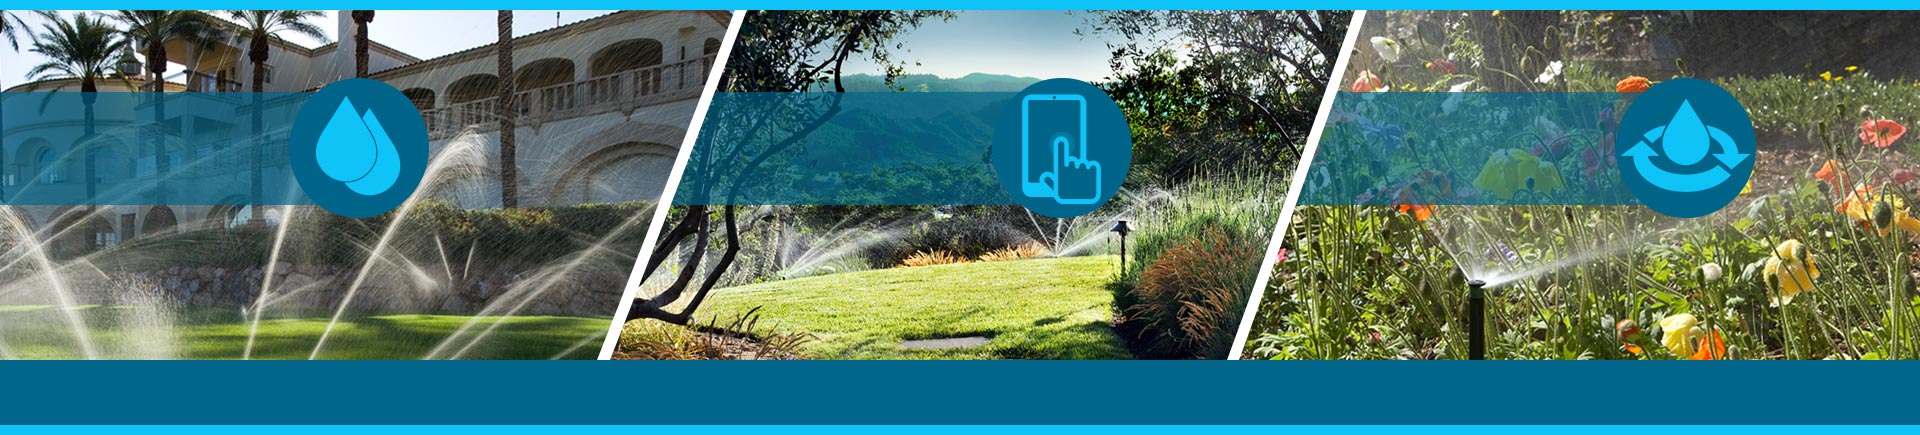 Risparmia acqua, gestisci da remoto e fornisci assistenza online agli impianti di irrigazione dei tuoi clienti